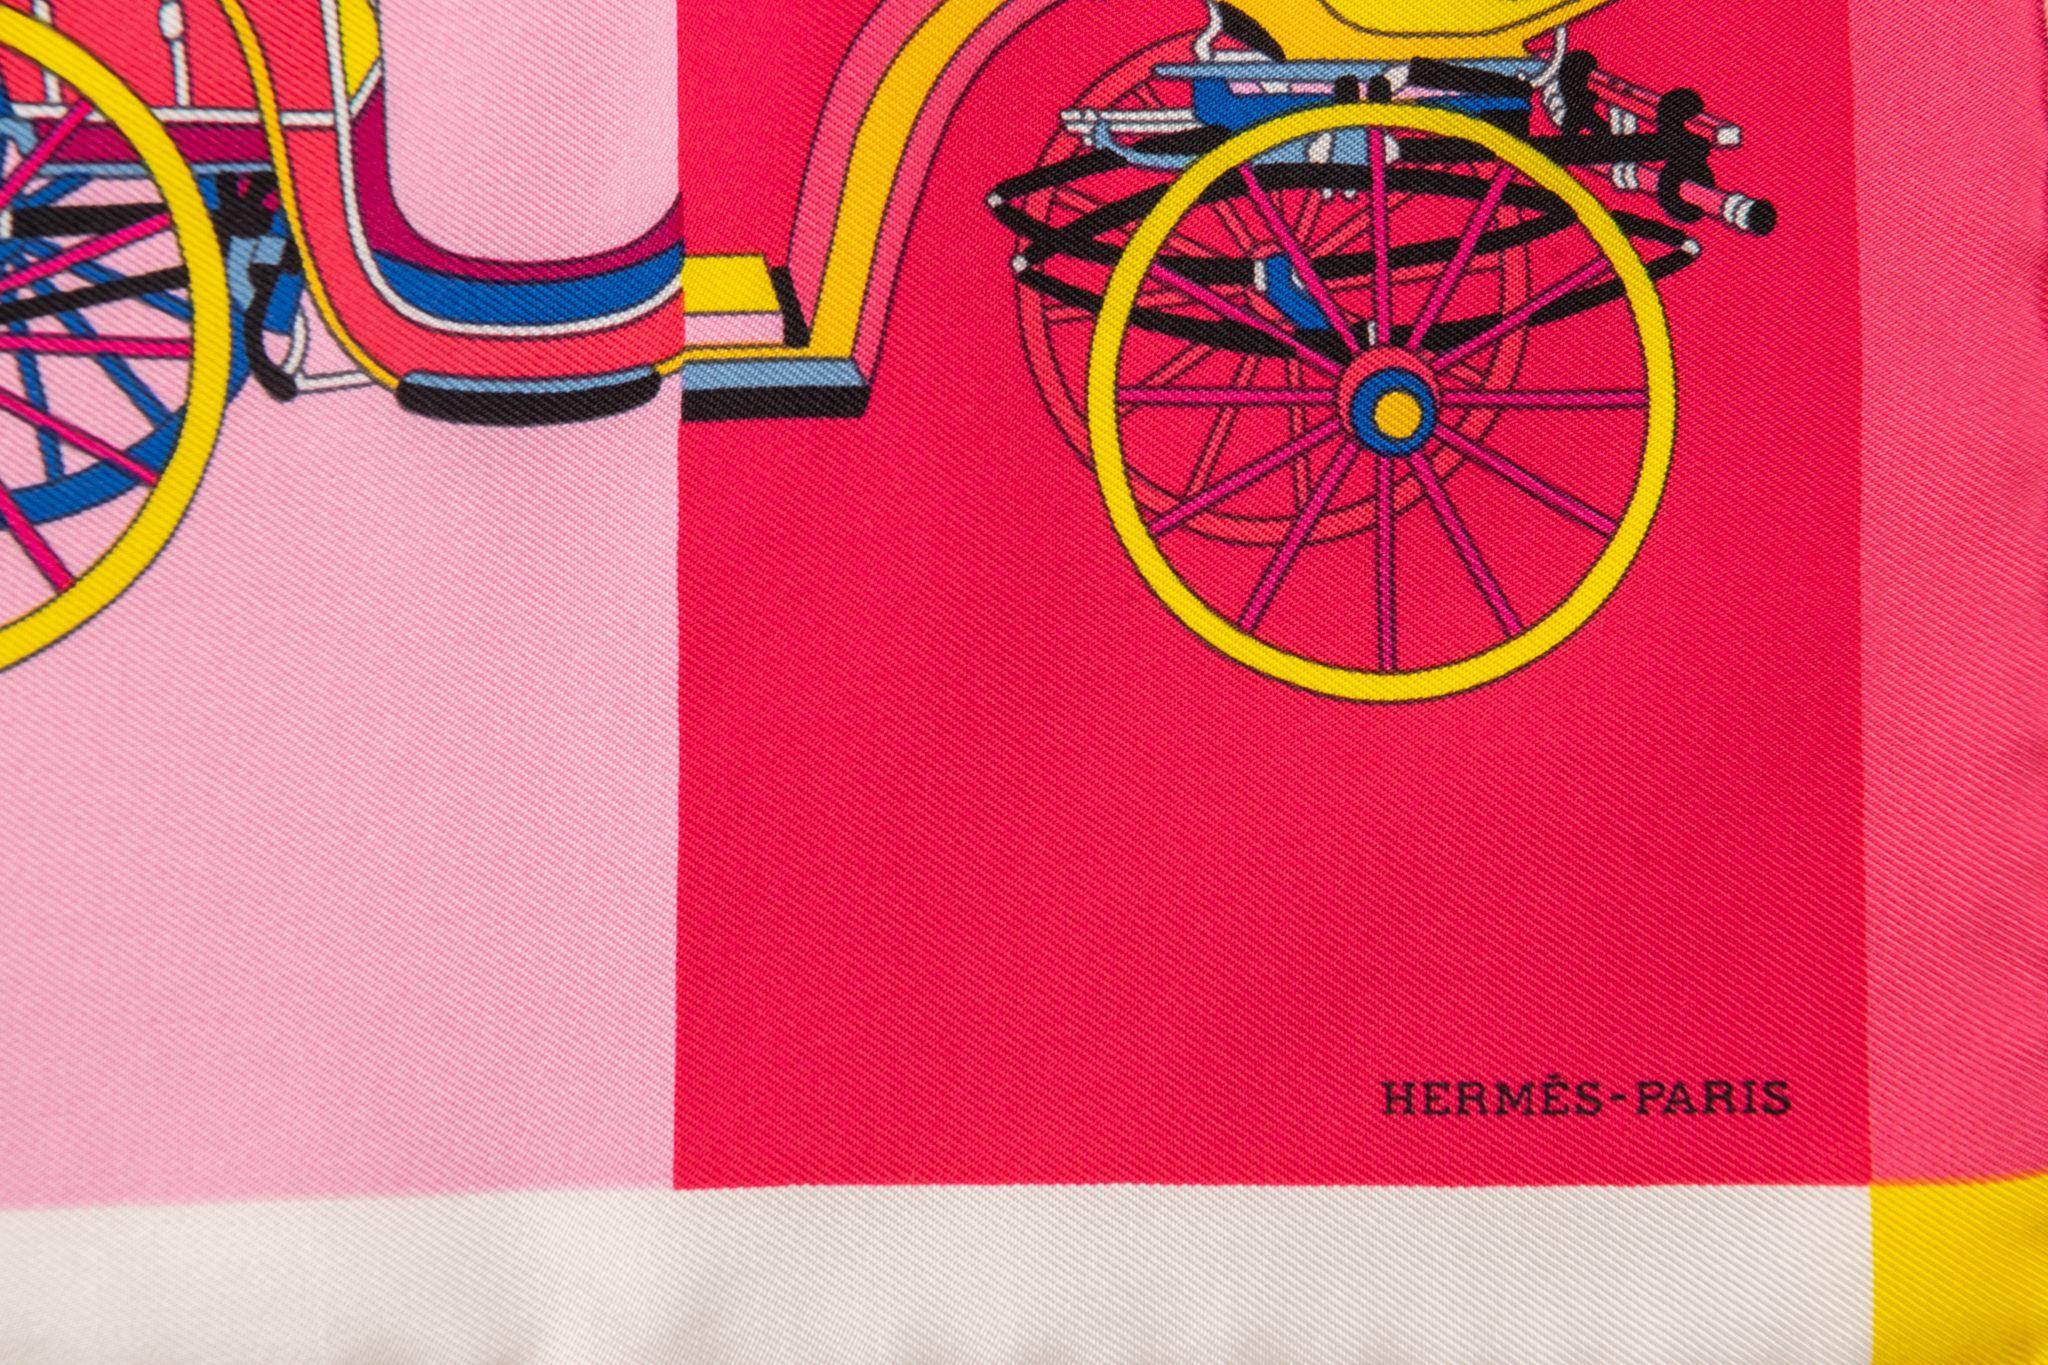 Hermès brand new multicolor carriageages silk gavroche. Bords roulés à la main.
Livré avec sa boîte d'origine.